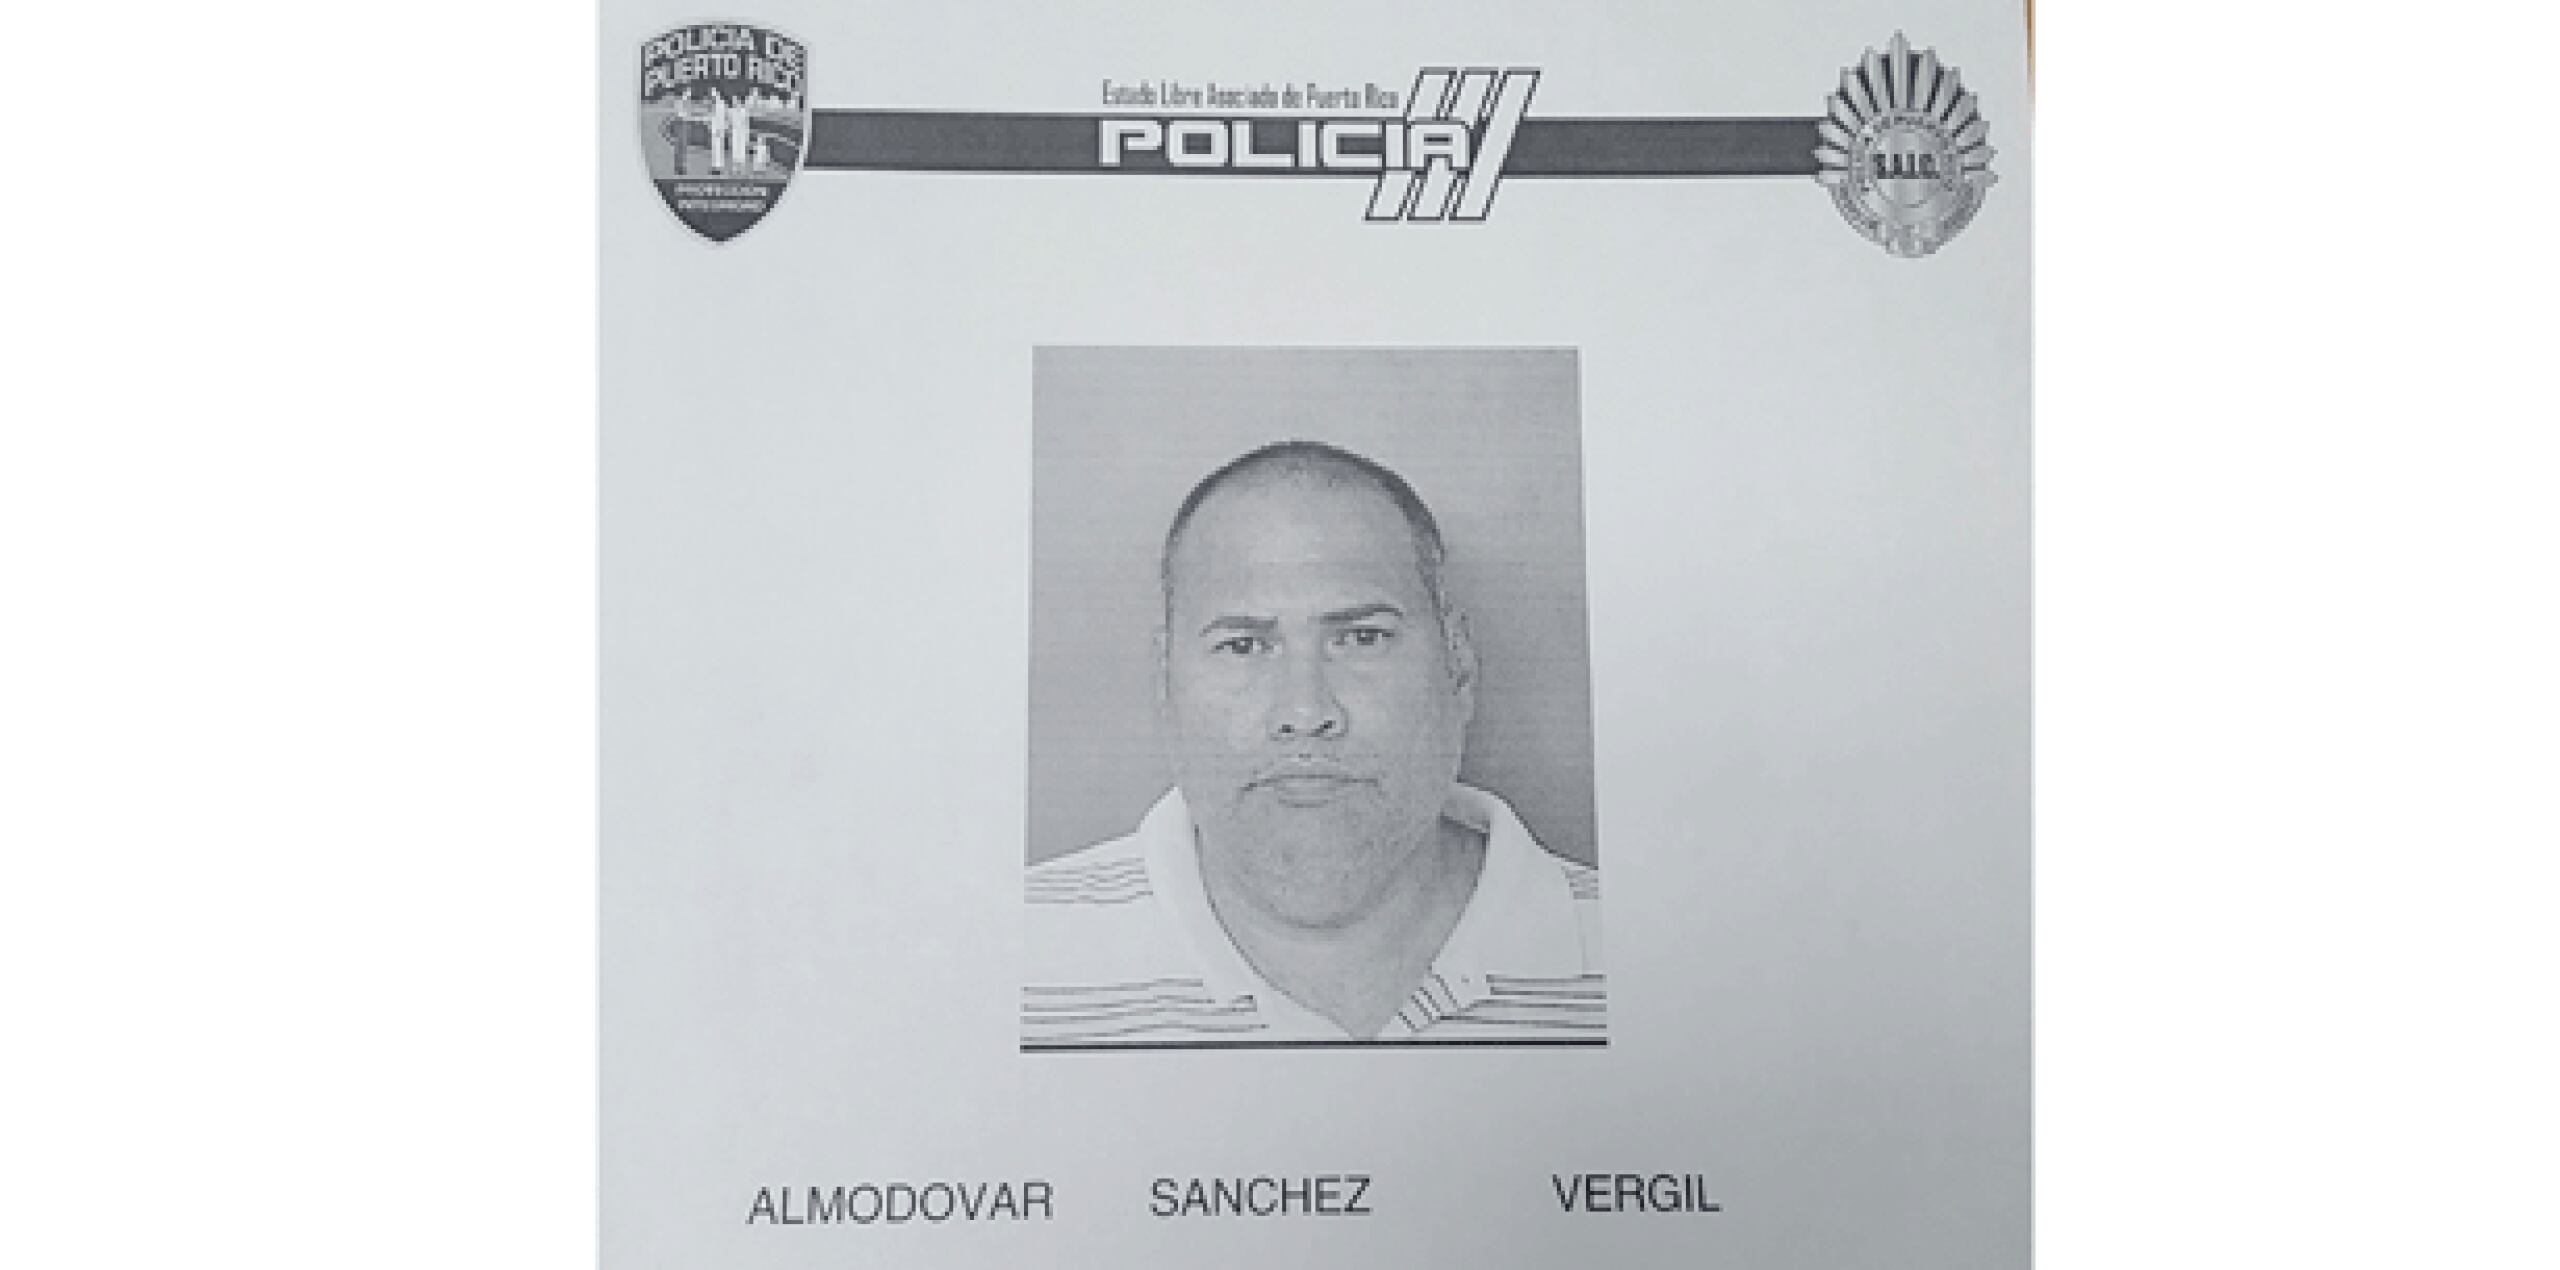 El agente Vergil Almodóvar Sánchez, de 43 años, quedó ingresado en la cárcel Las Cucharas de Ponce. (Suministrada)